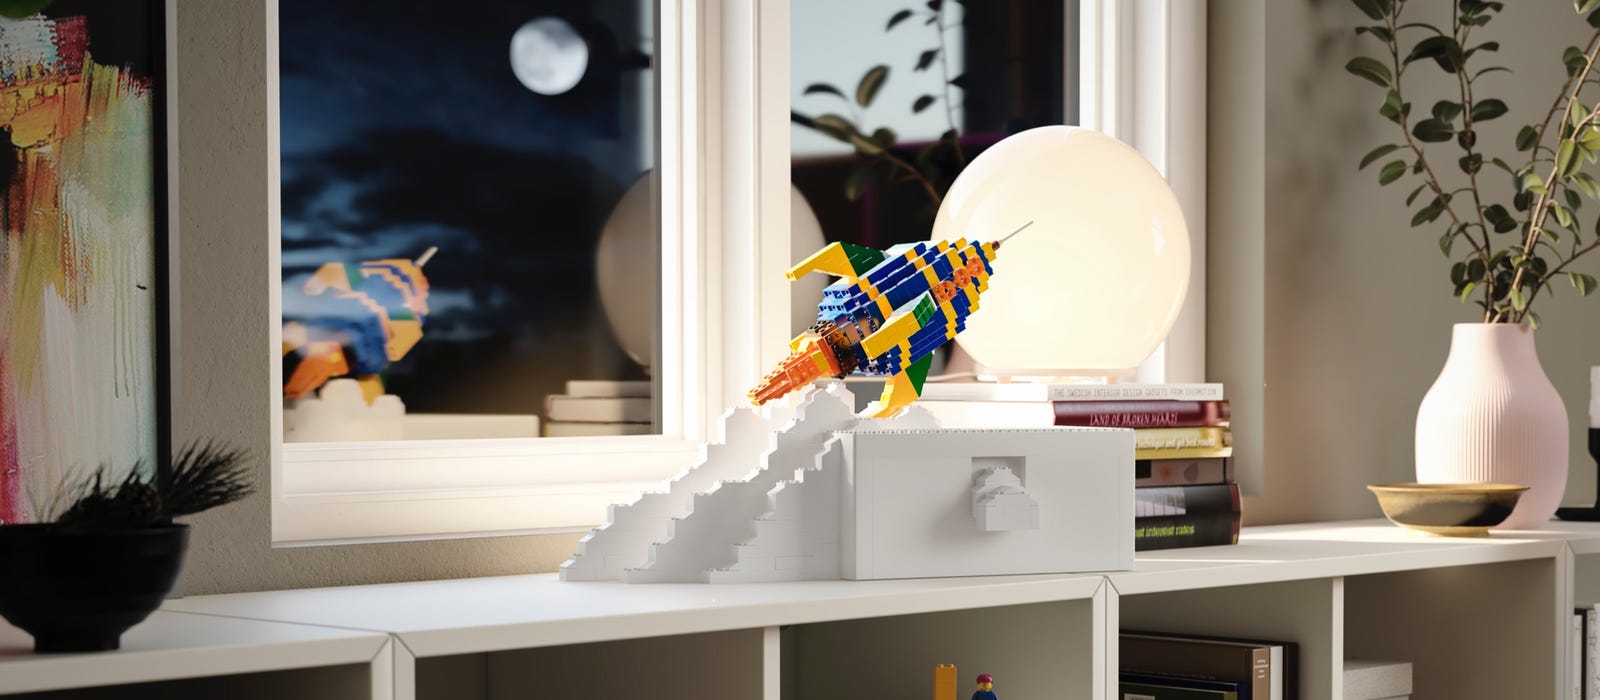 Collaborazione tra IKEA® e LEGO® - IKEA Italia